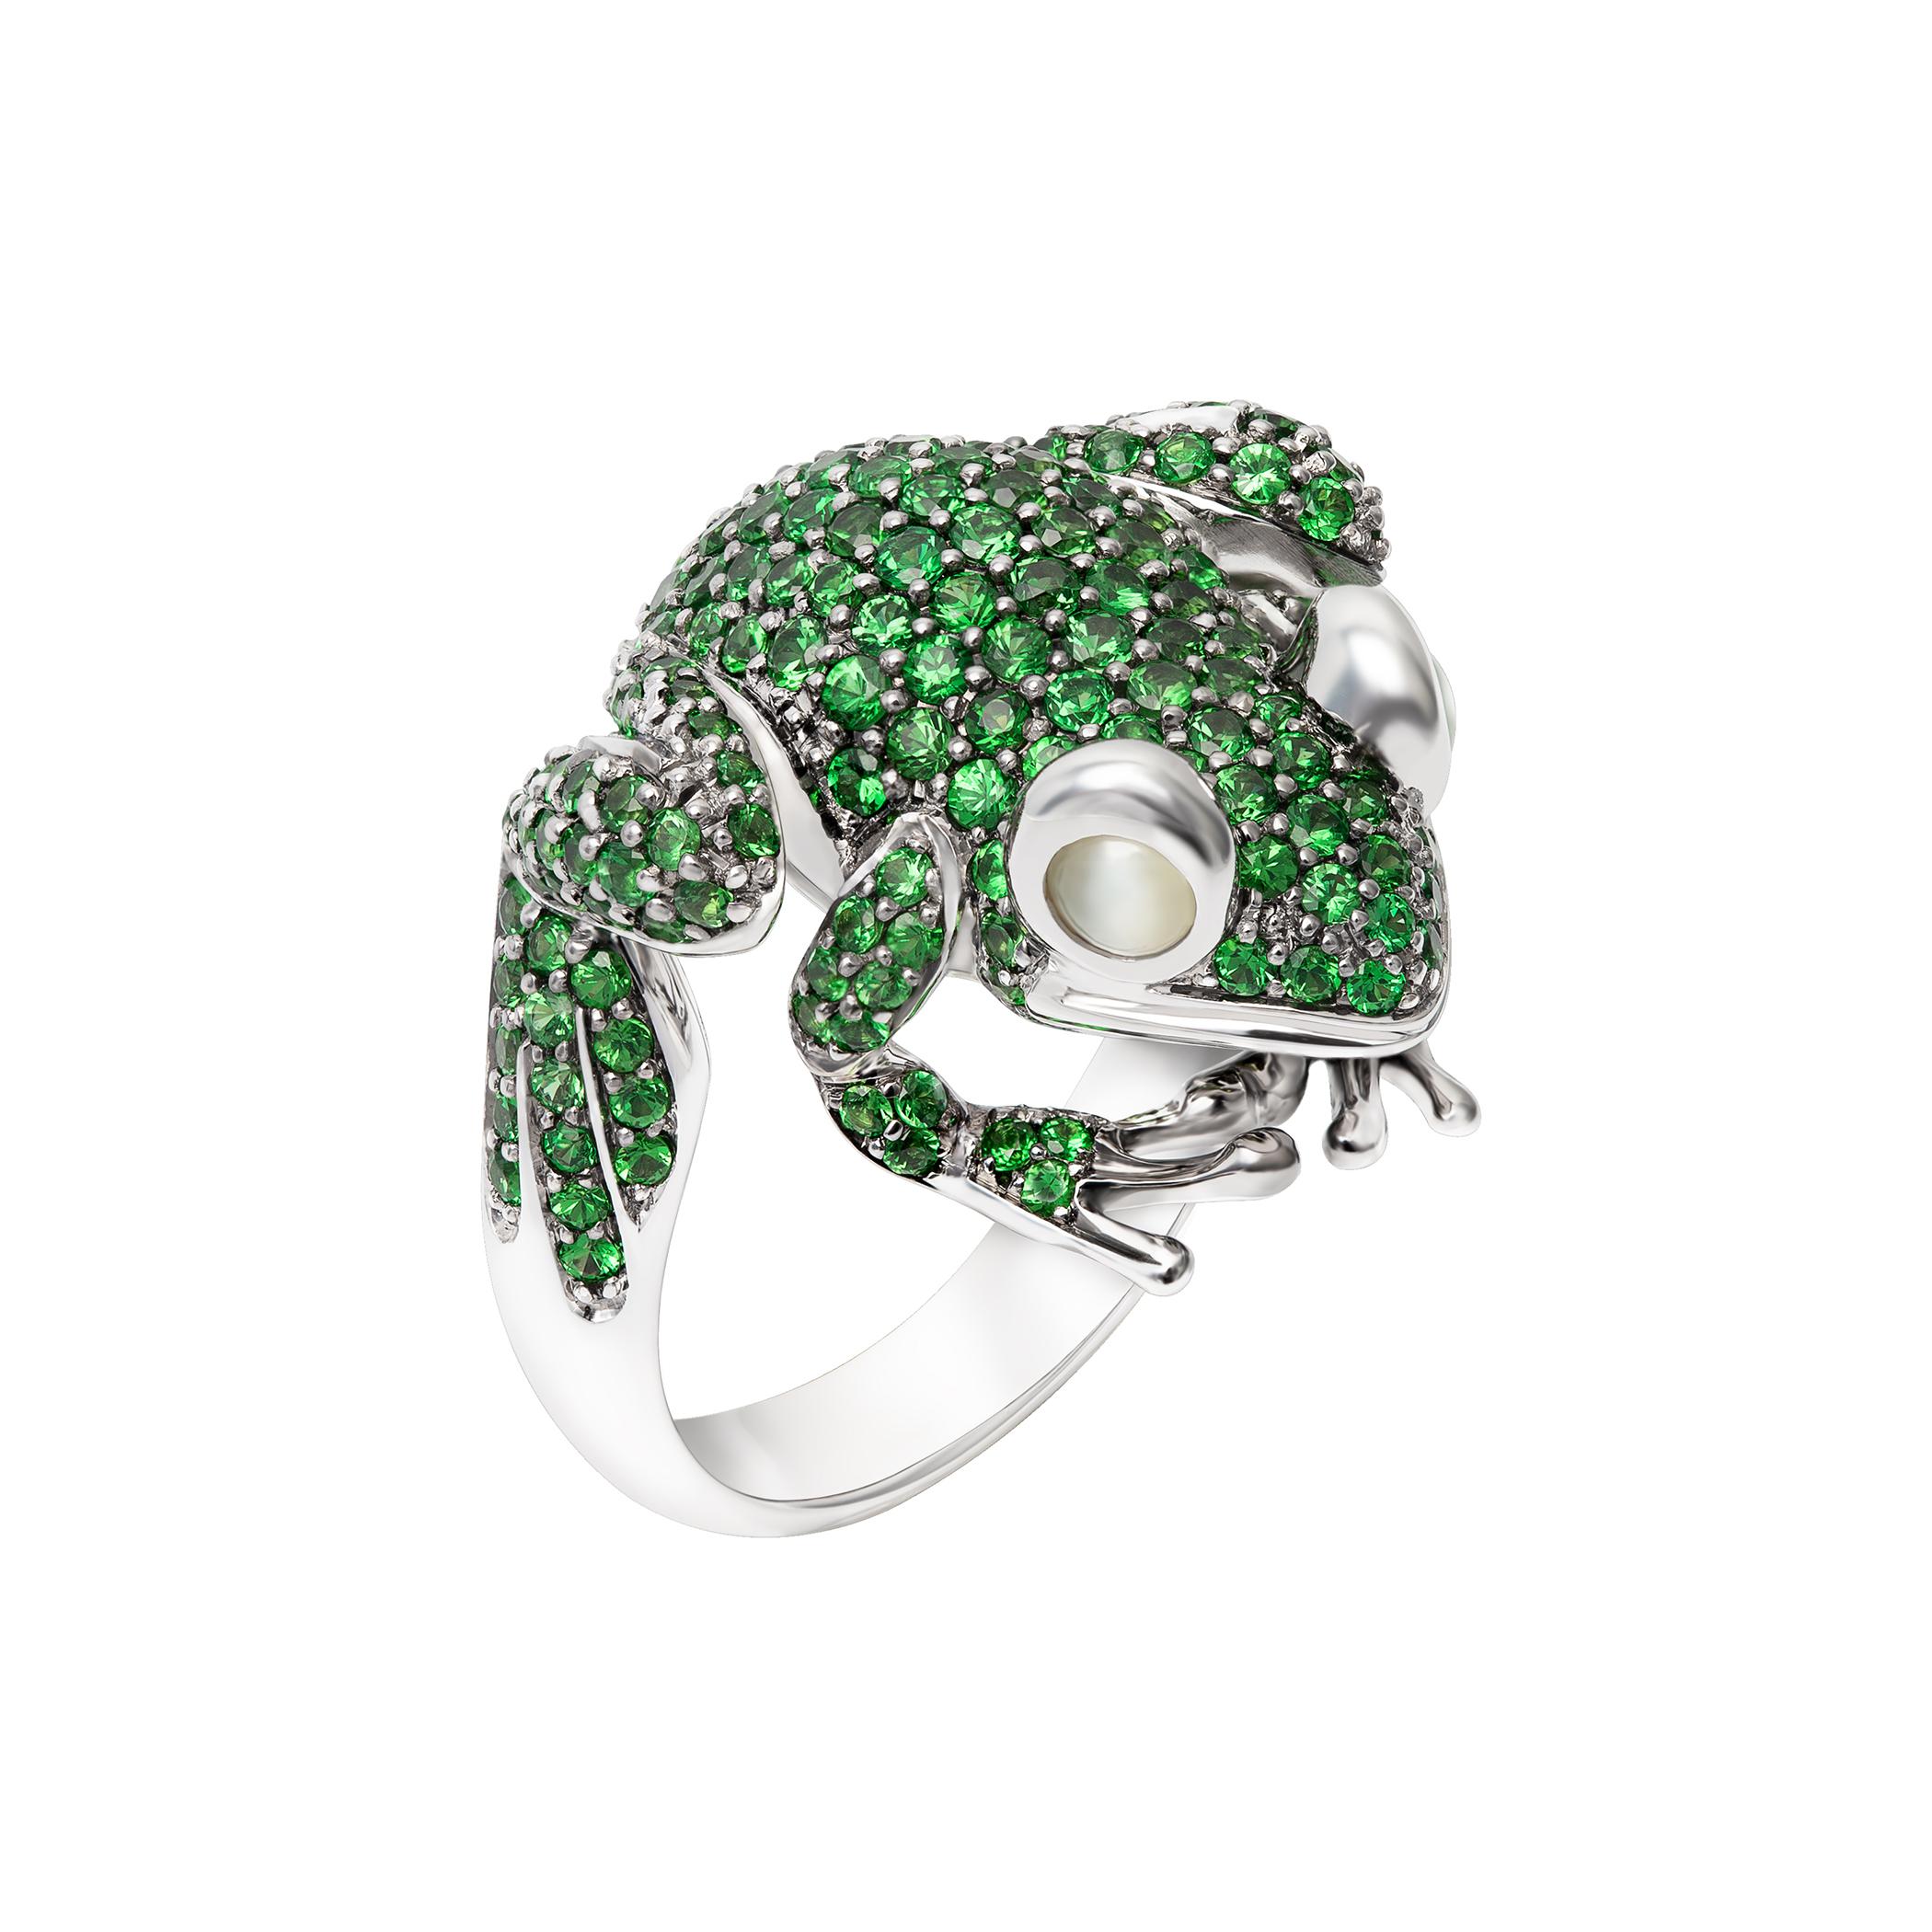 Boucles d'oreilles assorties disponibles

En matière de bijoux, les grenouilles sont incontestablement des porte-bonheur. La grenouille est un symbole amérindien de richesse et de prospérité. ... Posséder et porter un bijou en forme de grenouille